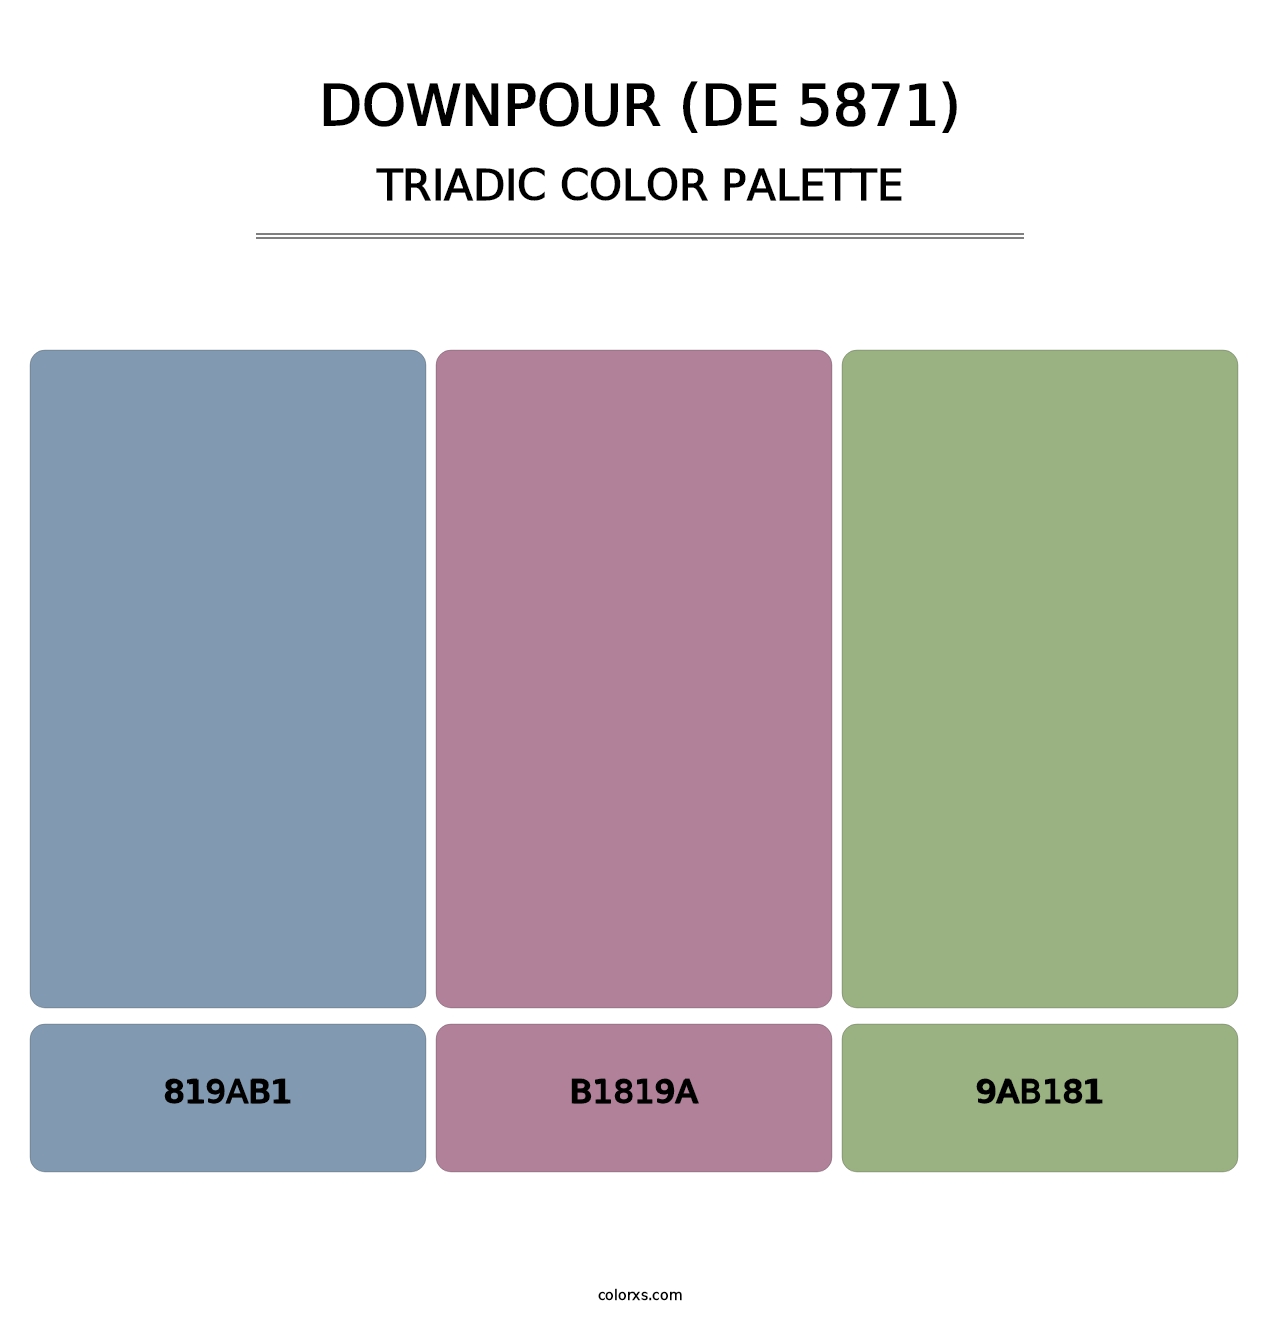 Downpour (DE 5871) - Triadic Color Palette